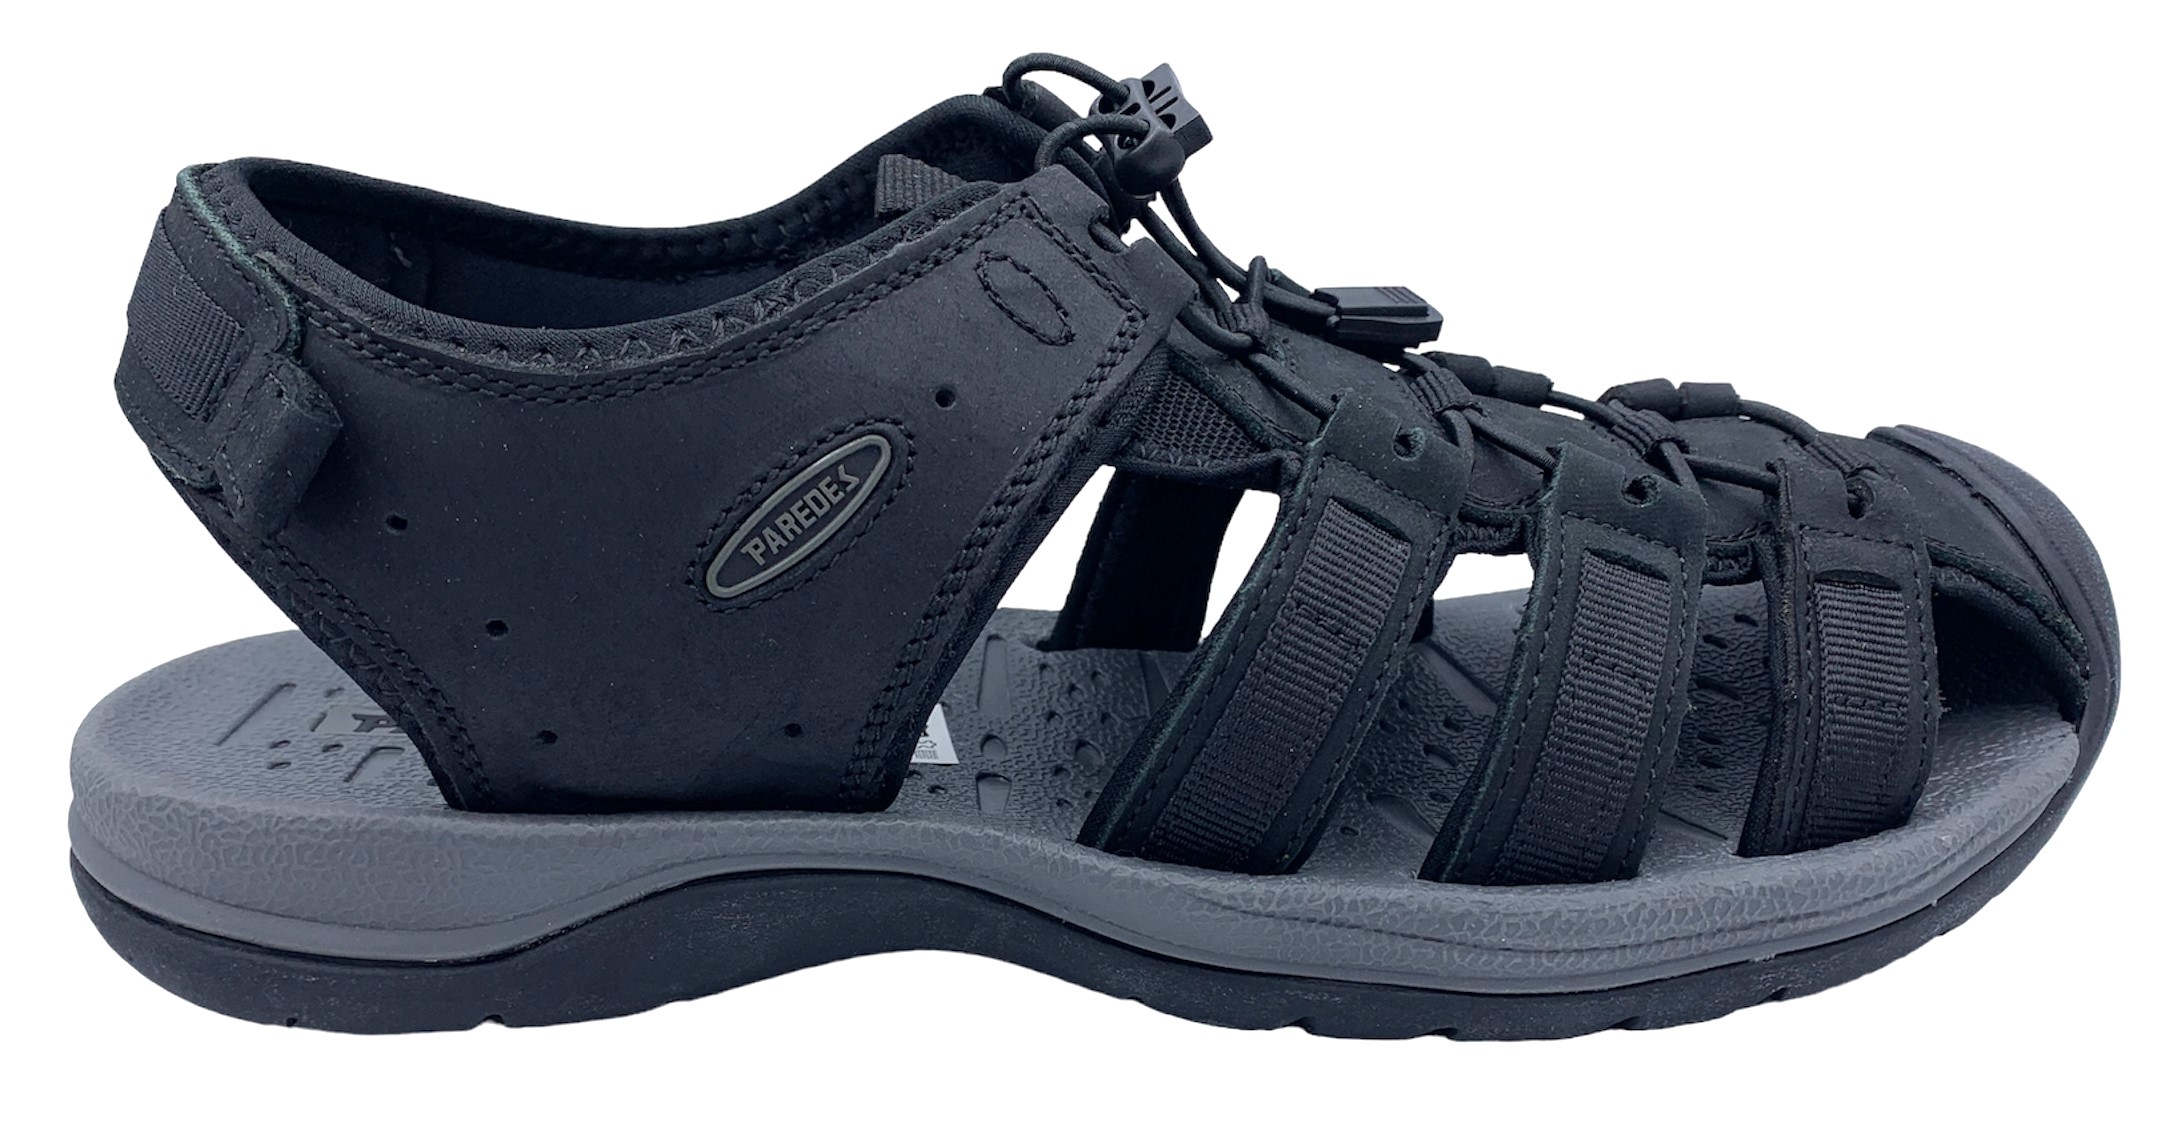 Pánské kožené sandále Misstic Paredes 22175 černé Velikost: 40 (EU)